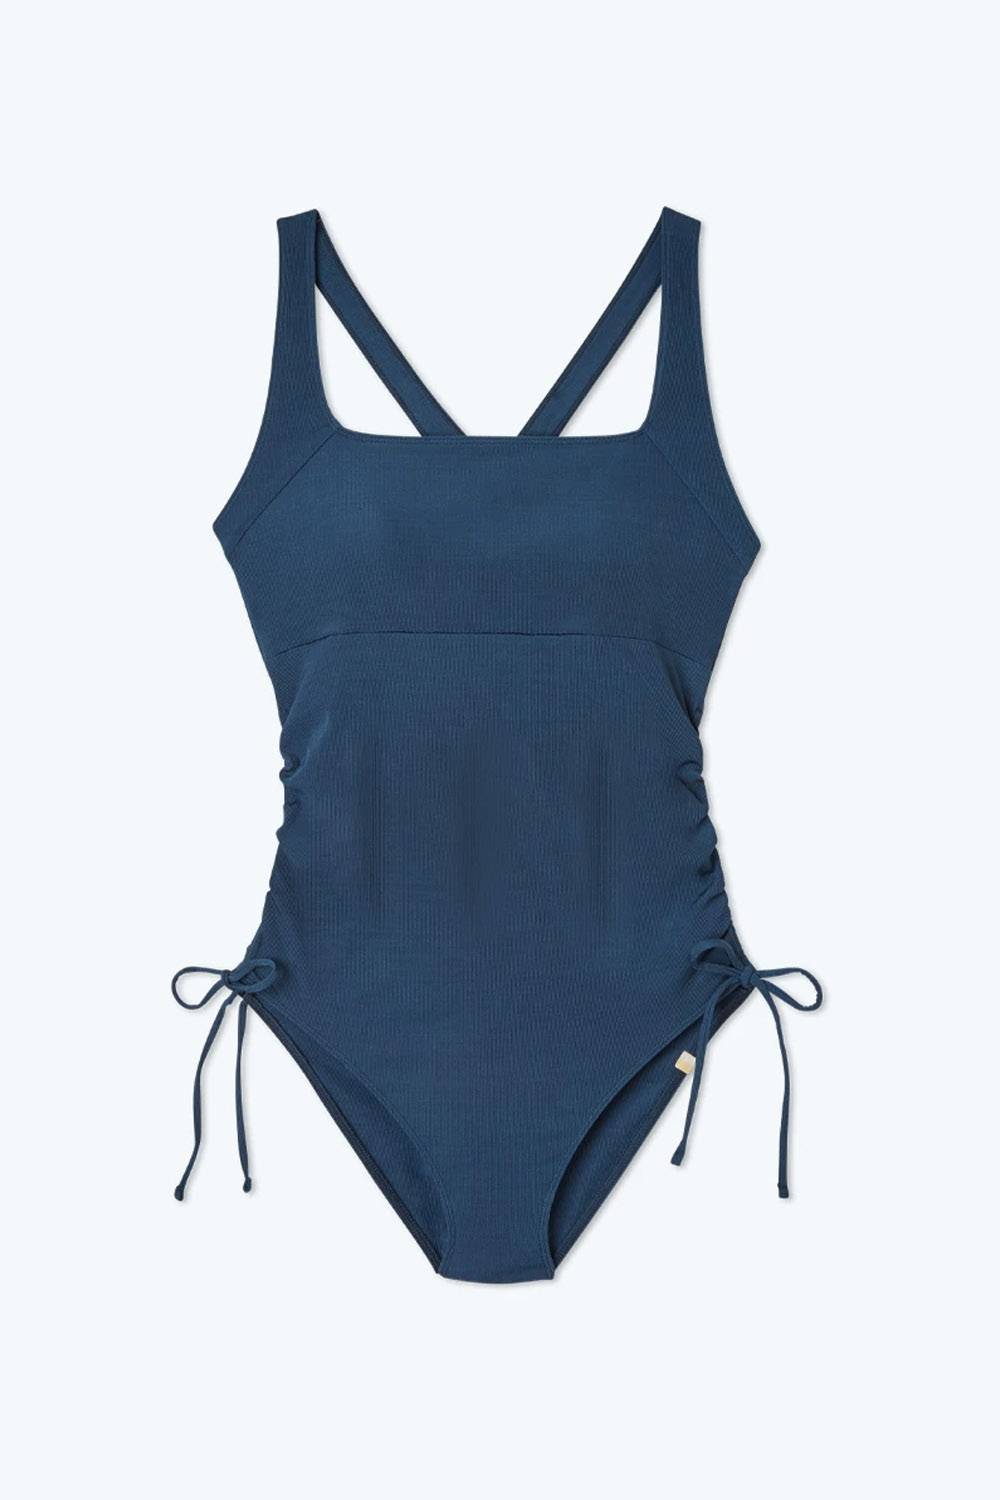 summersalt sustainable maternity swimwear